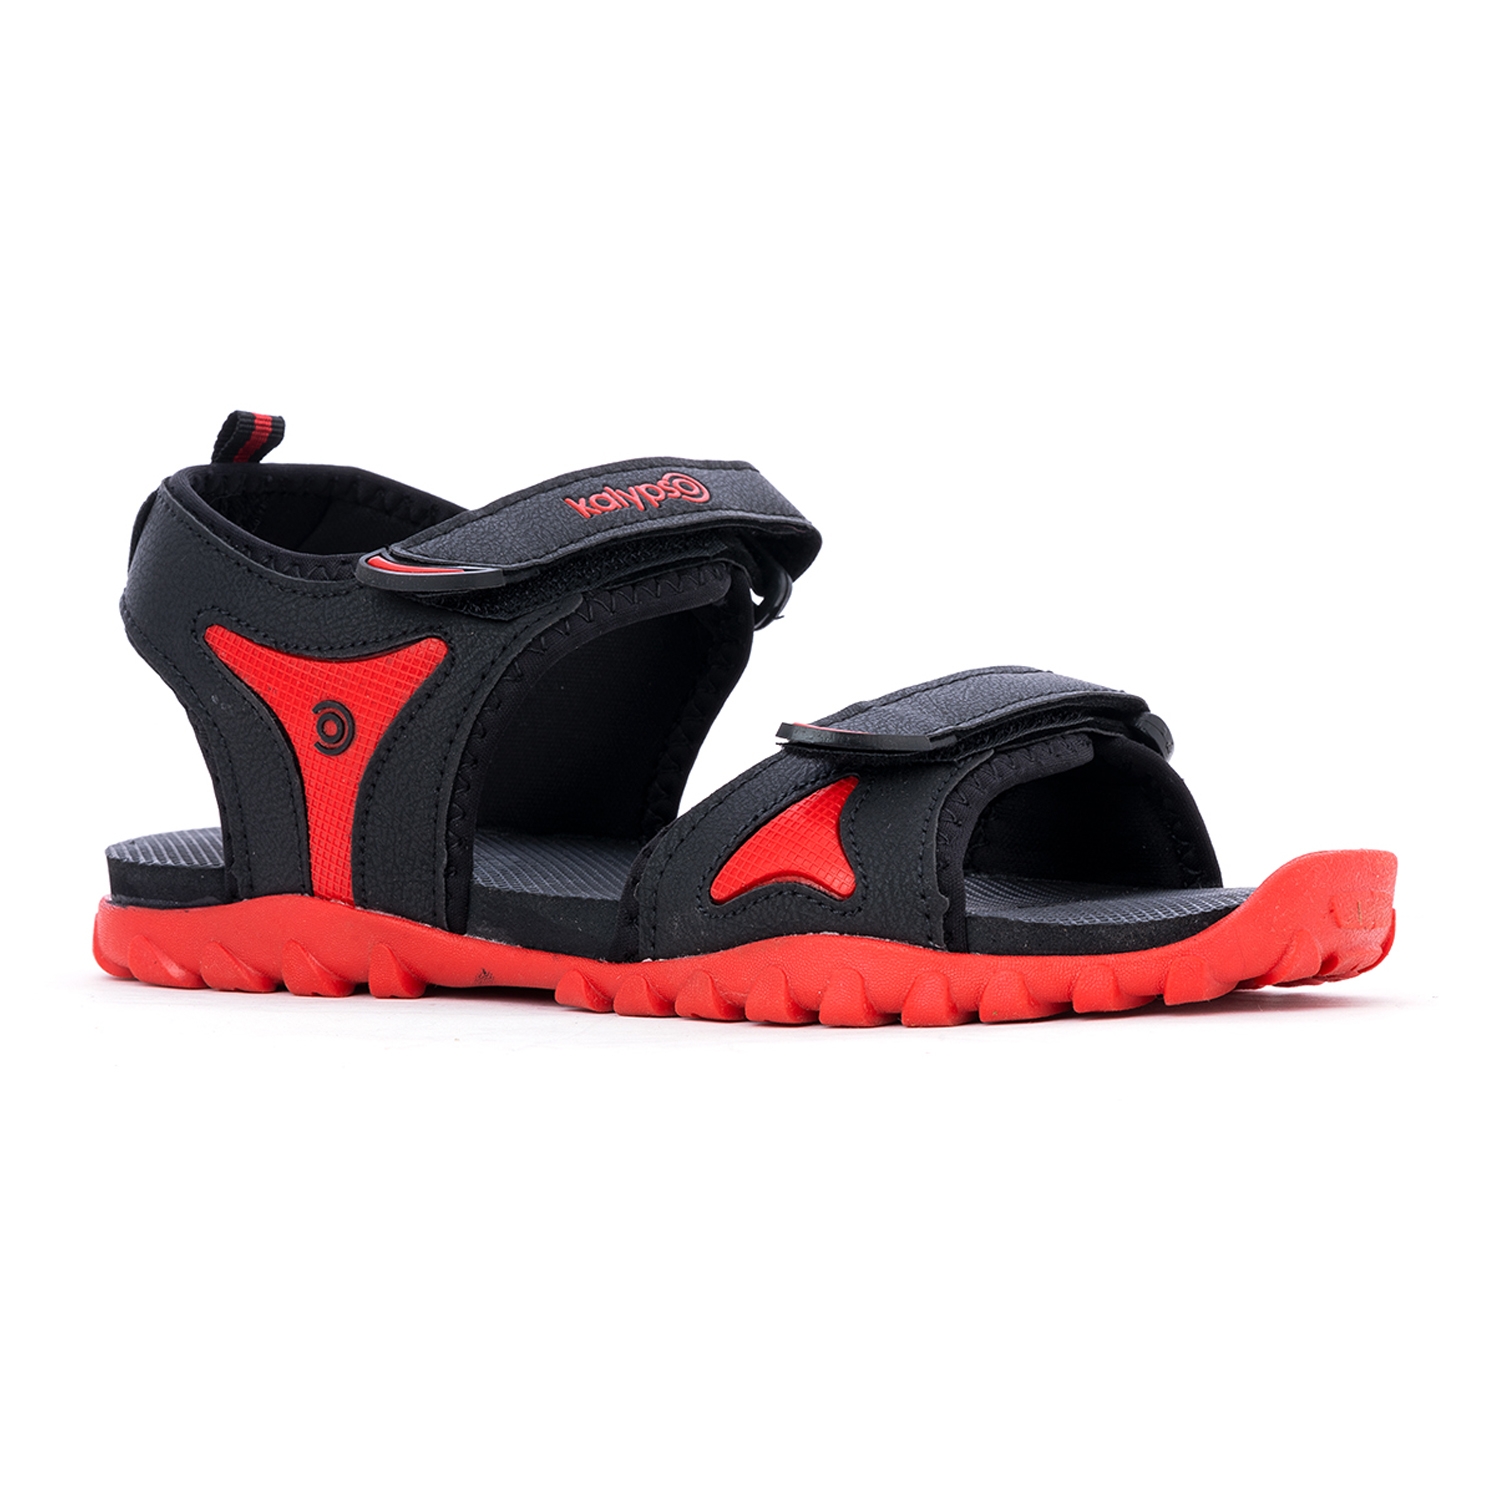 Khadim | Fitnxt Red Floater Sandal for Boys